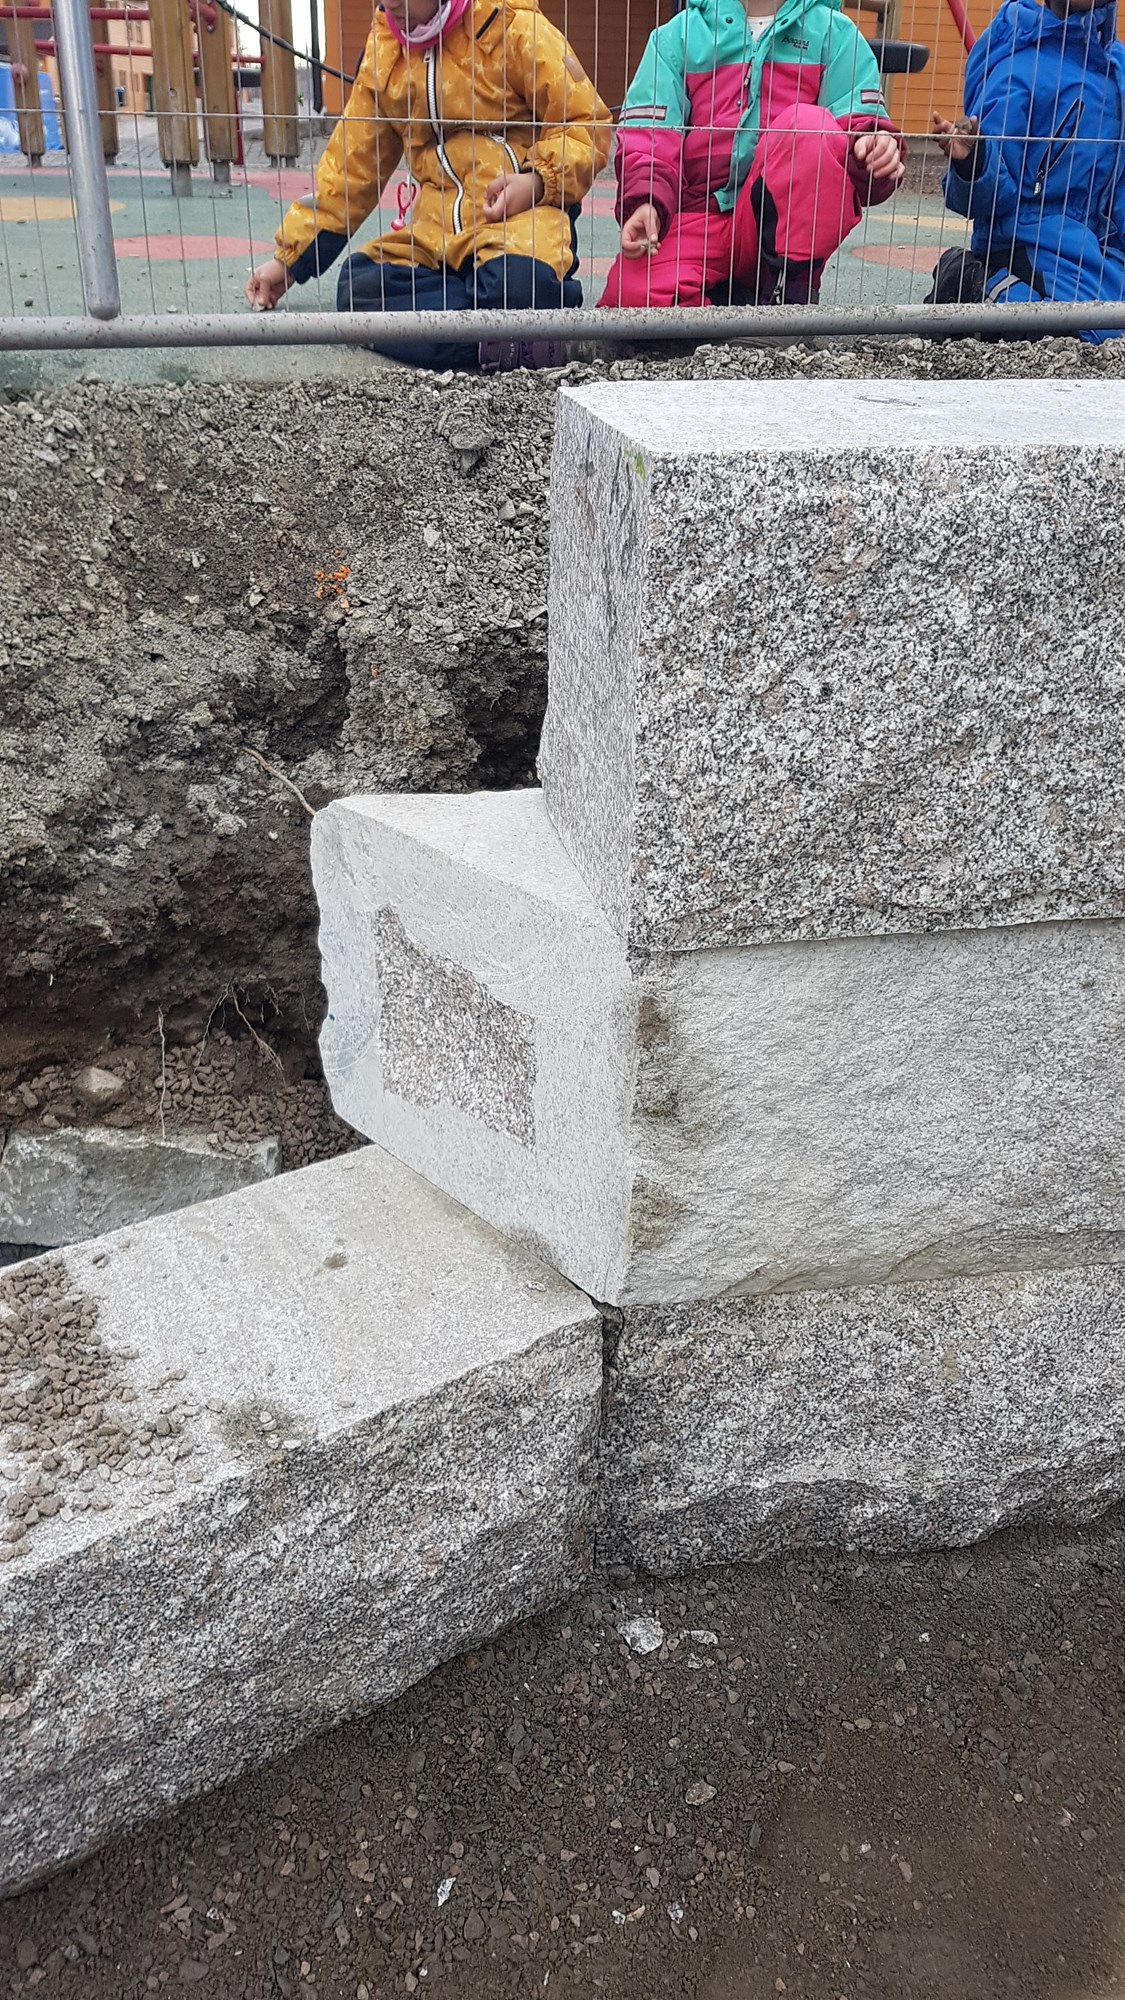 Bygging av Granitt støttemur fallende lengder - 2020-01-23 13.46.23.jpg - Pål10